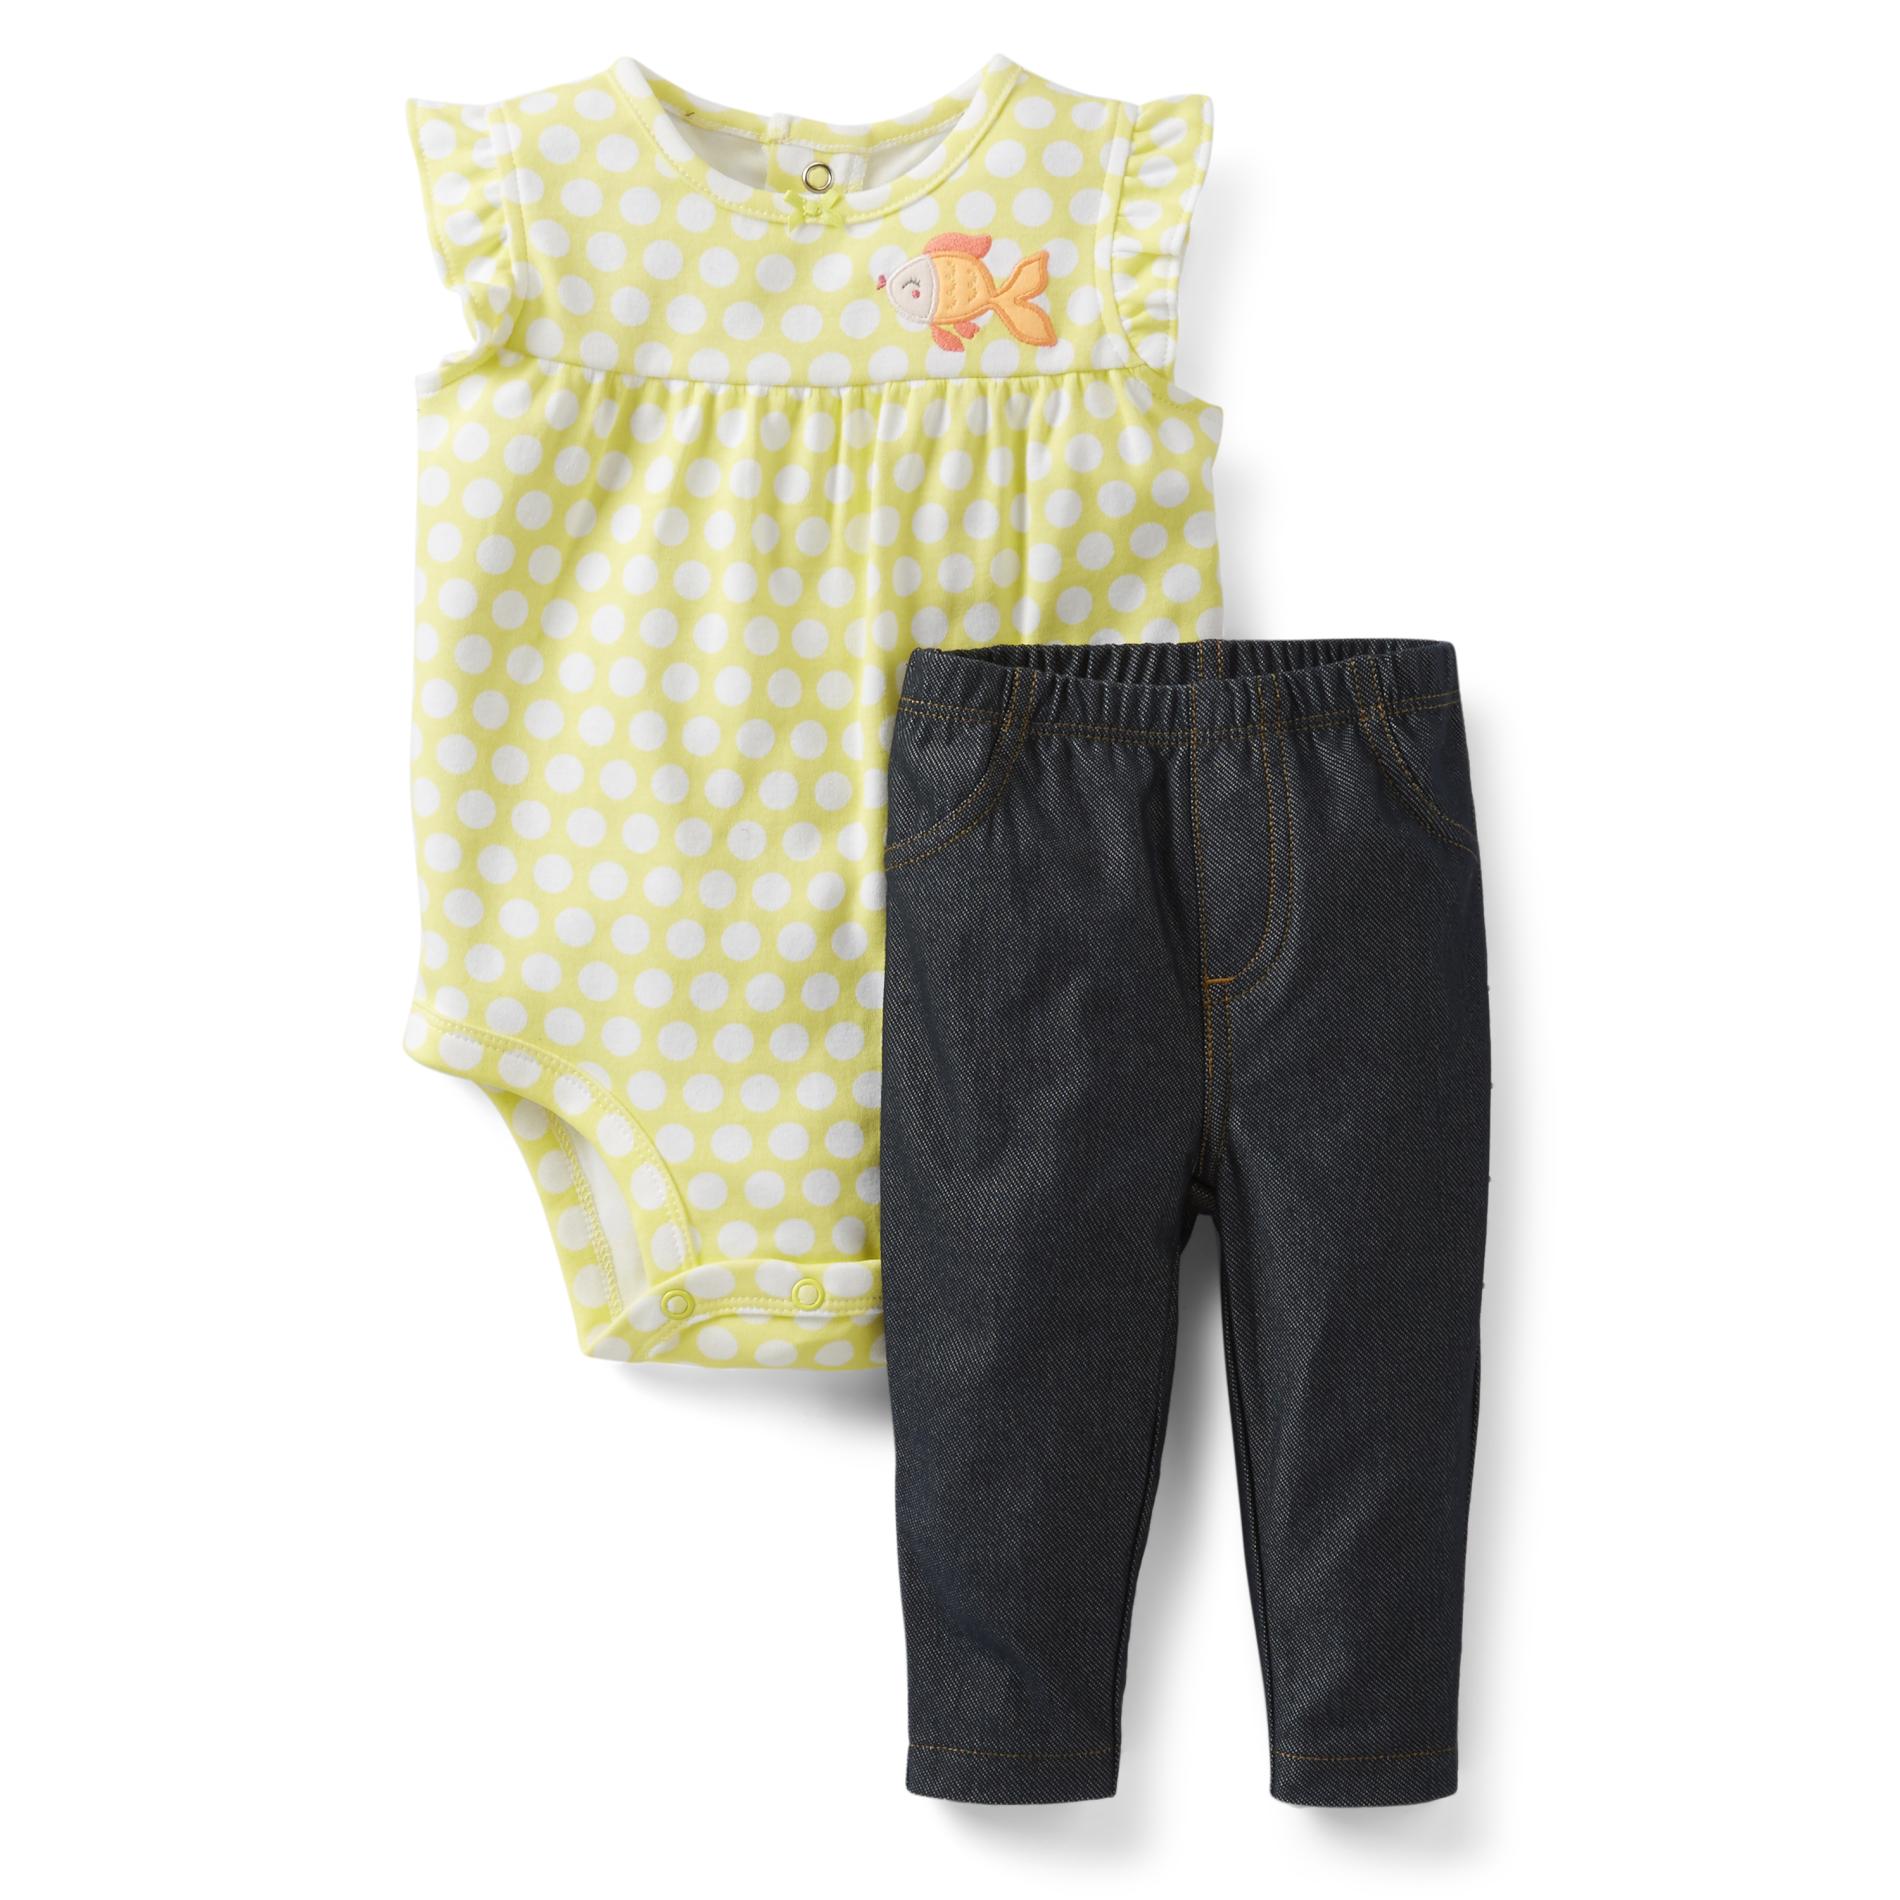 Carter's Infant Girl's Bodysuit & Leggings - Polka Dots